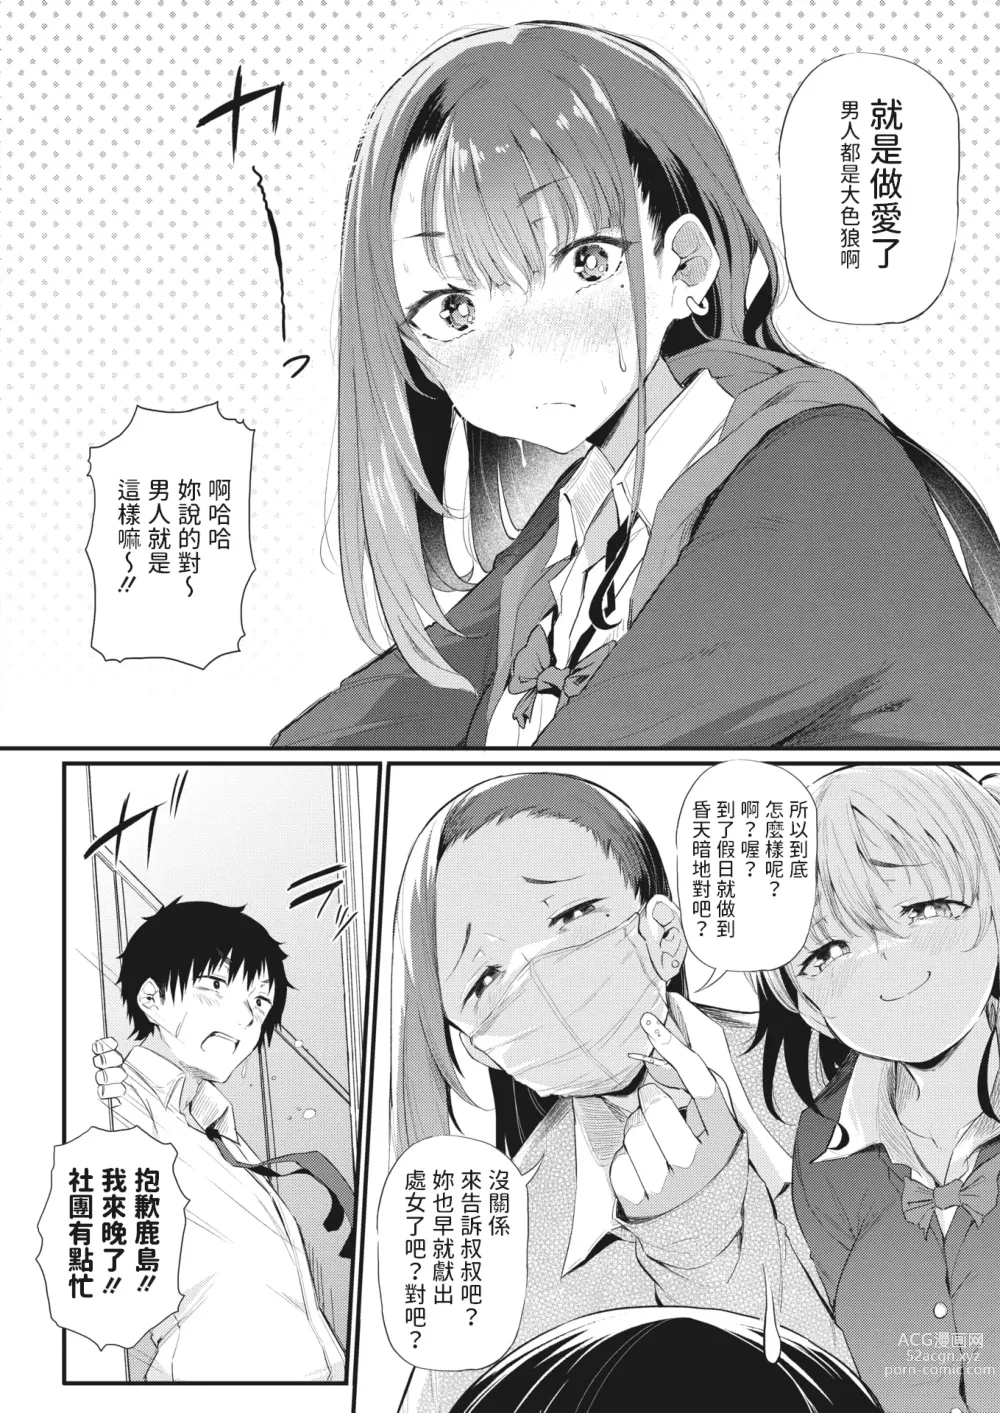 Page 4 of manga Koitsura Ichatsuiten zo ~Kashima to Harada~